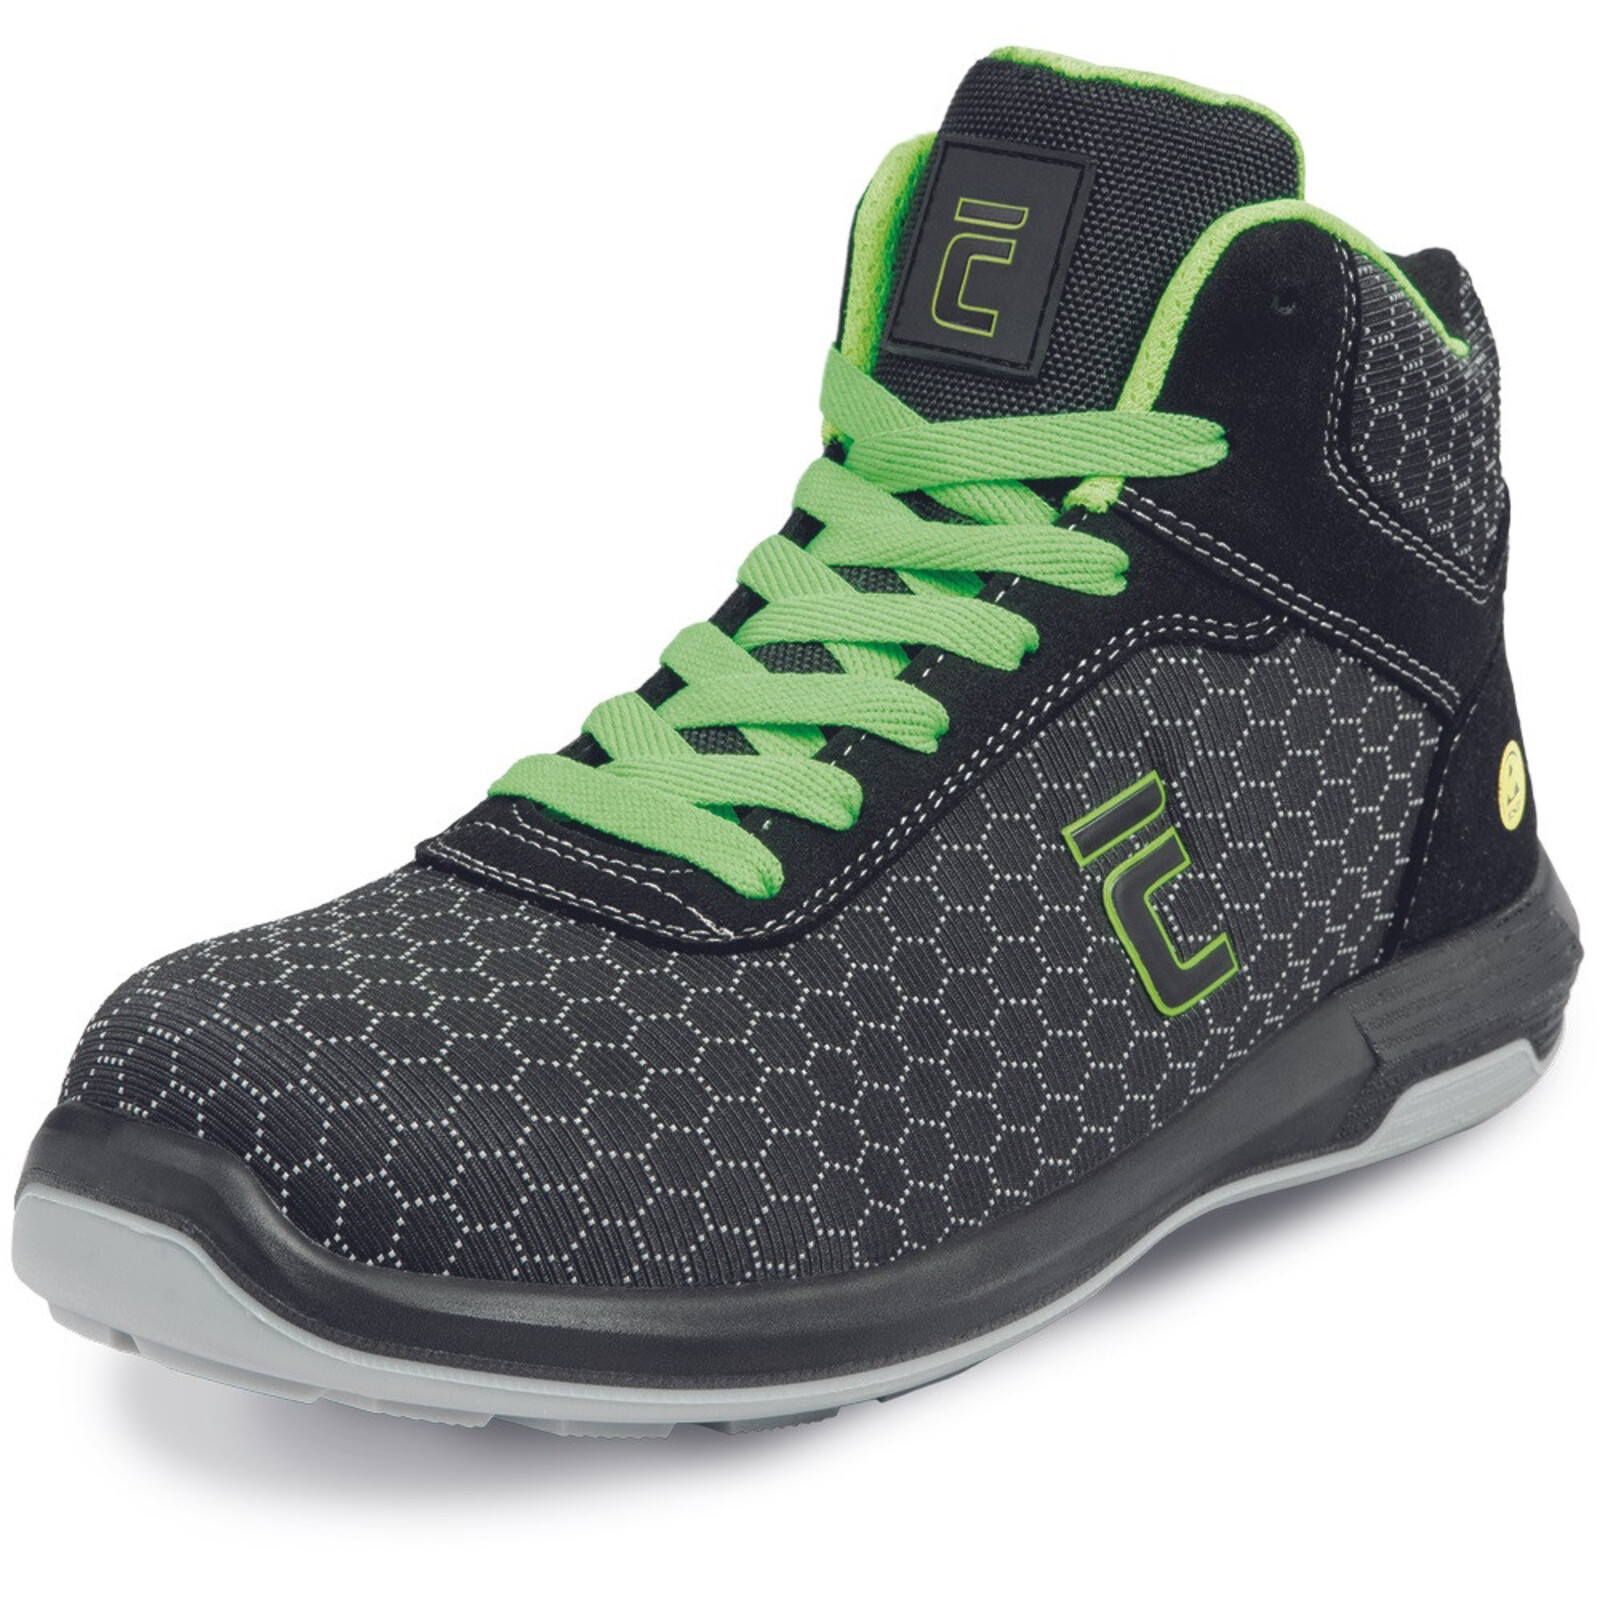 Bezpečnostná členková obuv Cerva Uttendorf MF ESD S3S SR - veľkosť: 42, farba: čierna/zelená